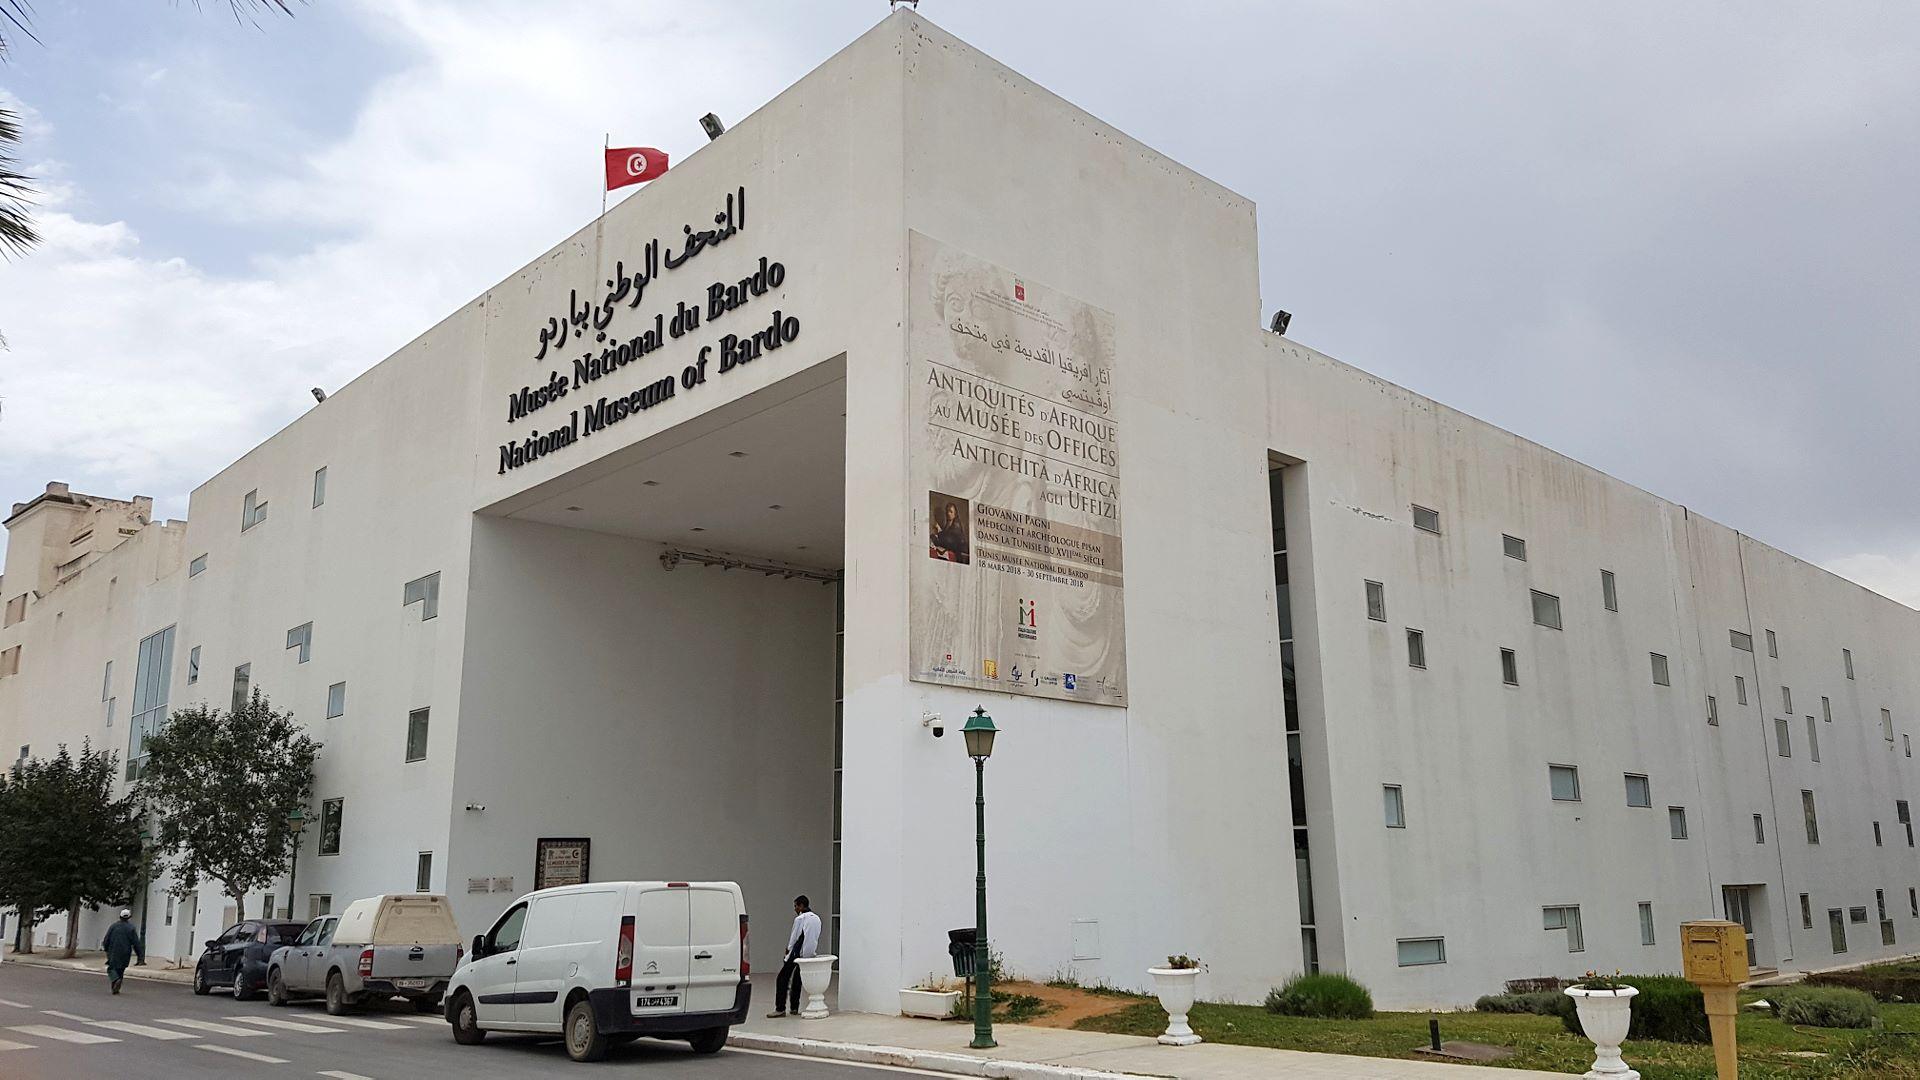 Τύνιδα - Μουσείο Μπαρντό52b